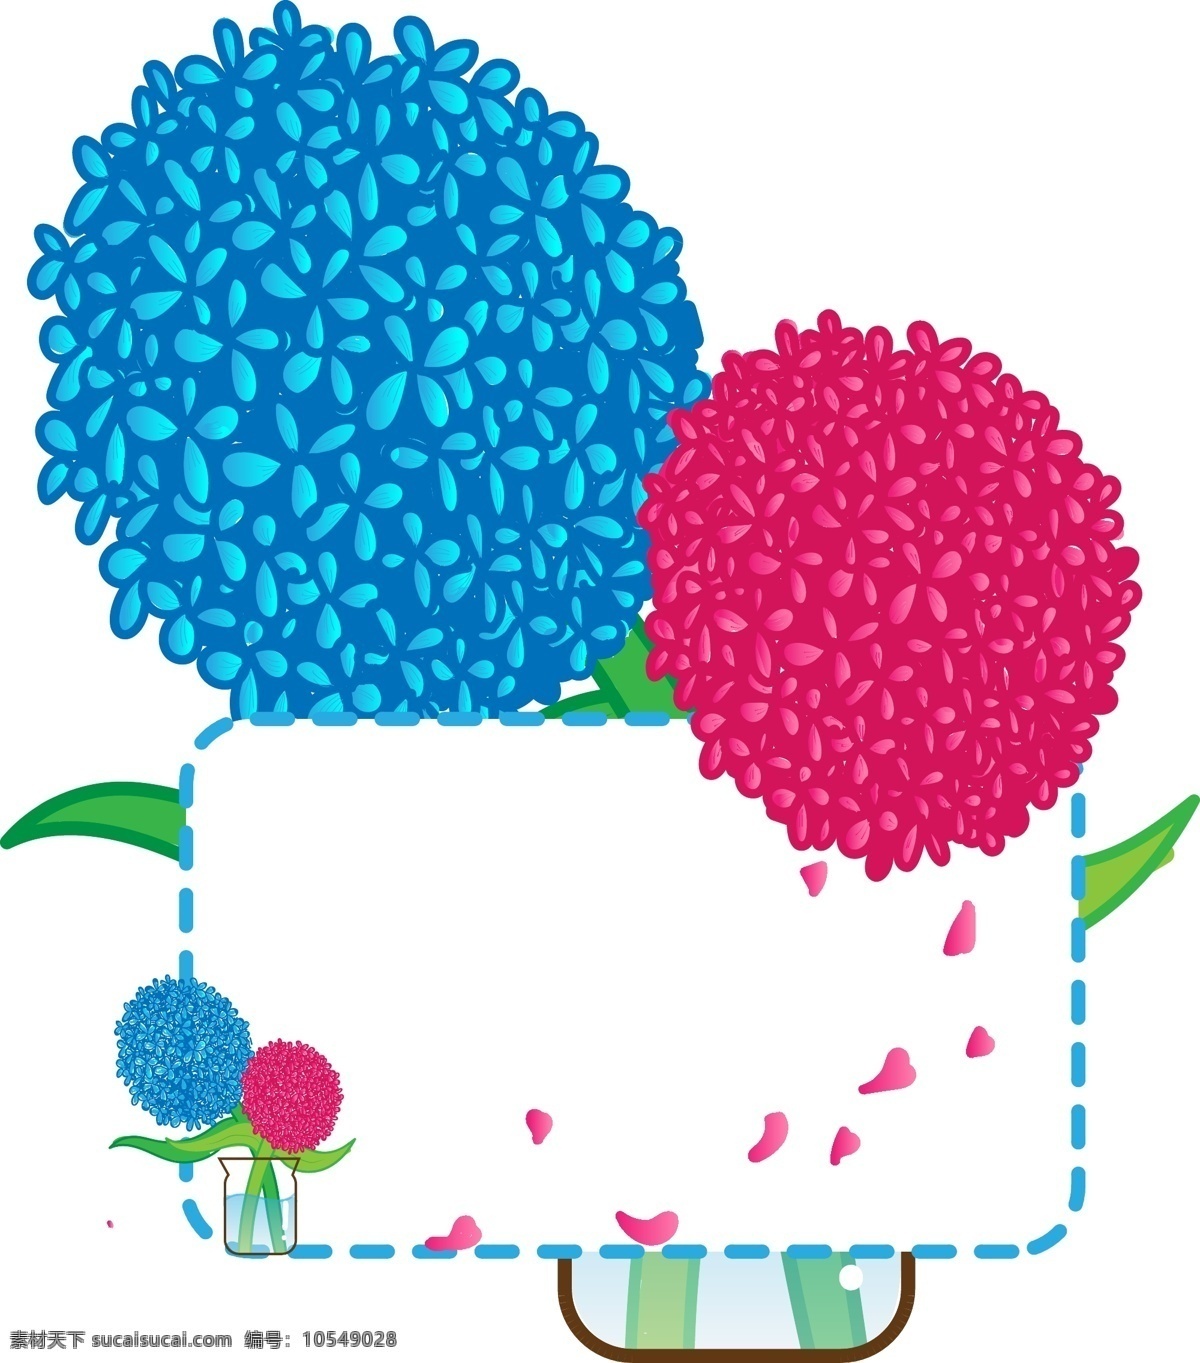 矢量 绣 球花 植物 边框 商用 插画 元素 蓝色 粉色 渐变花朵 花朵边框 手绘风 鲜花冰箱贴